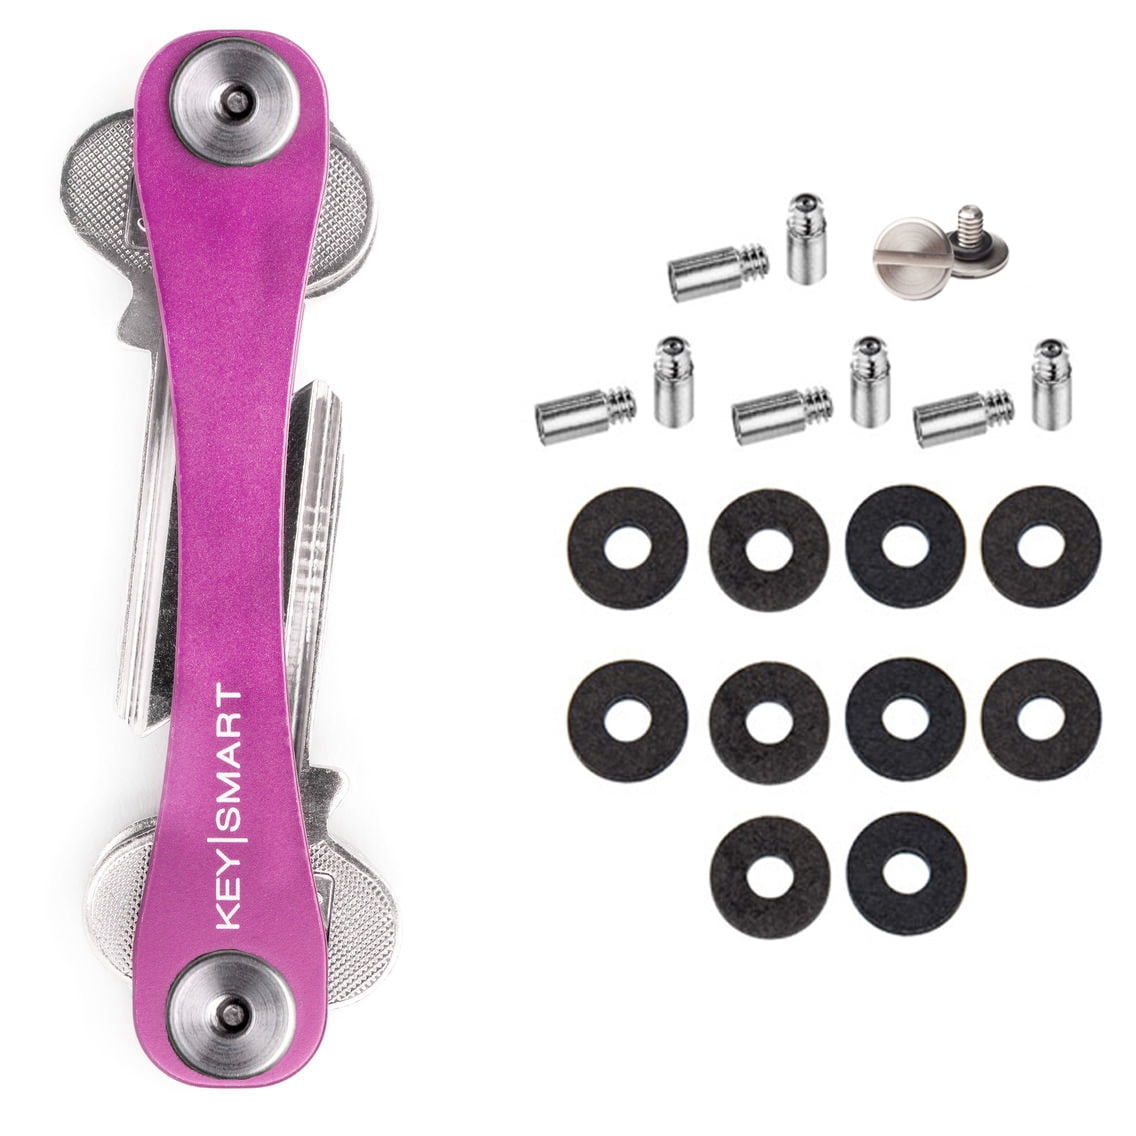 Key Smart Neues Modell Pink Schlüssel Etui • Organizer • Anhänger • KeySmart